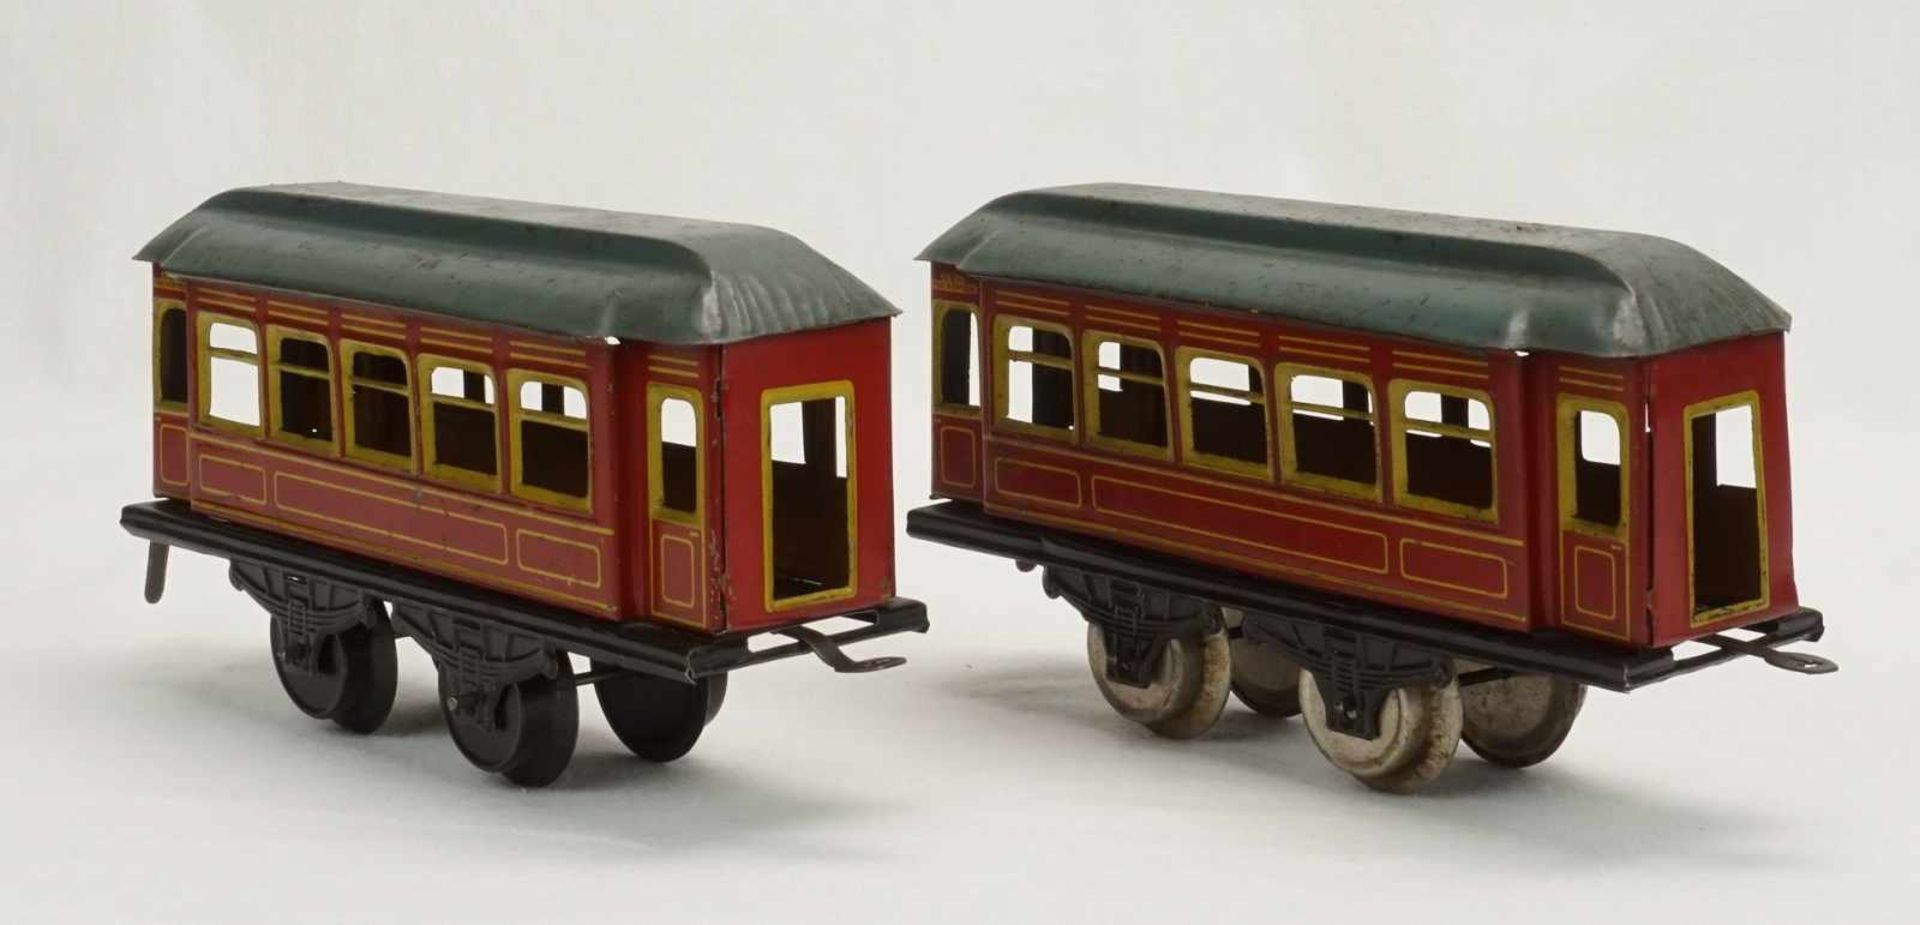 Drei Karl Bub Nürnberg Personenwagen, Spur 0, um 1920Blech lithografiert, zwei rote und ein blauer - Bild 2 aus 5